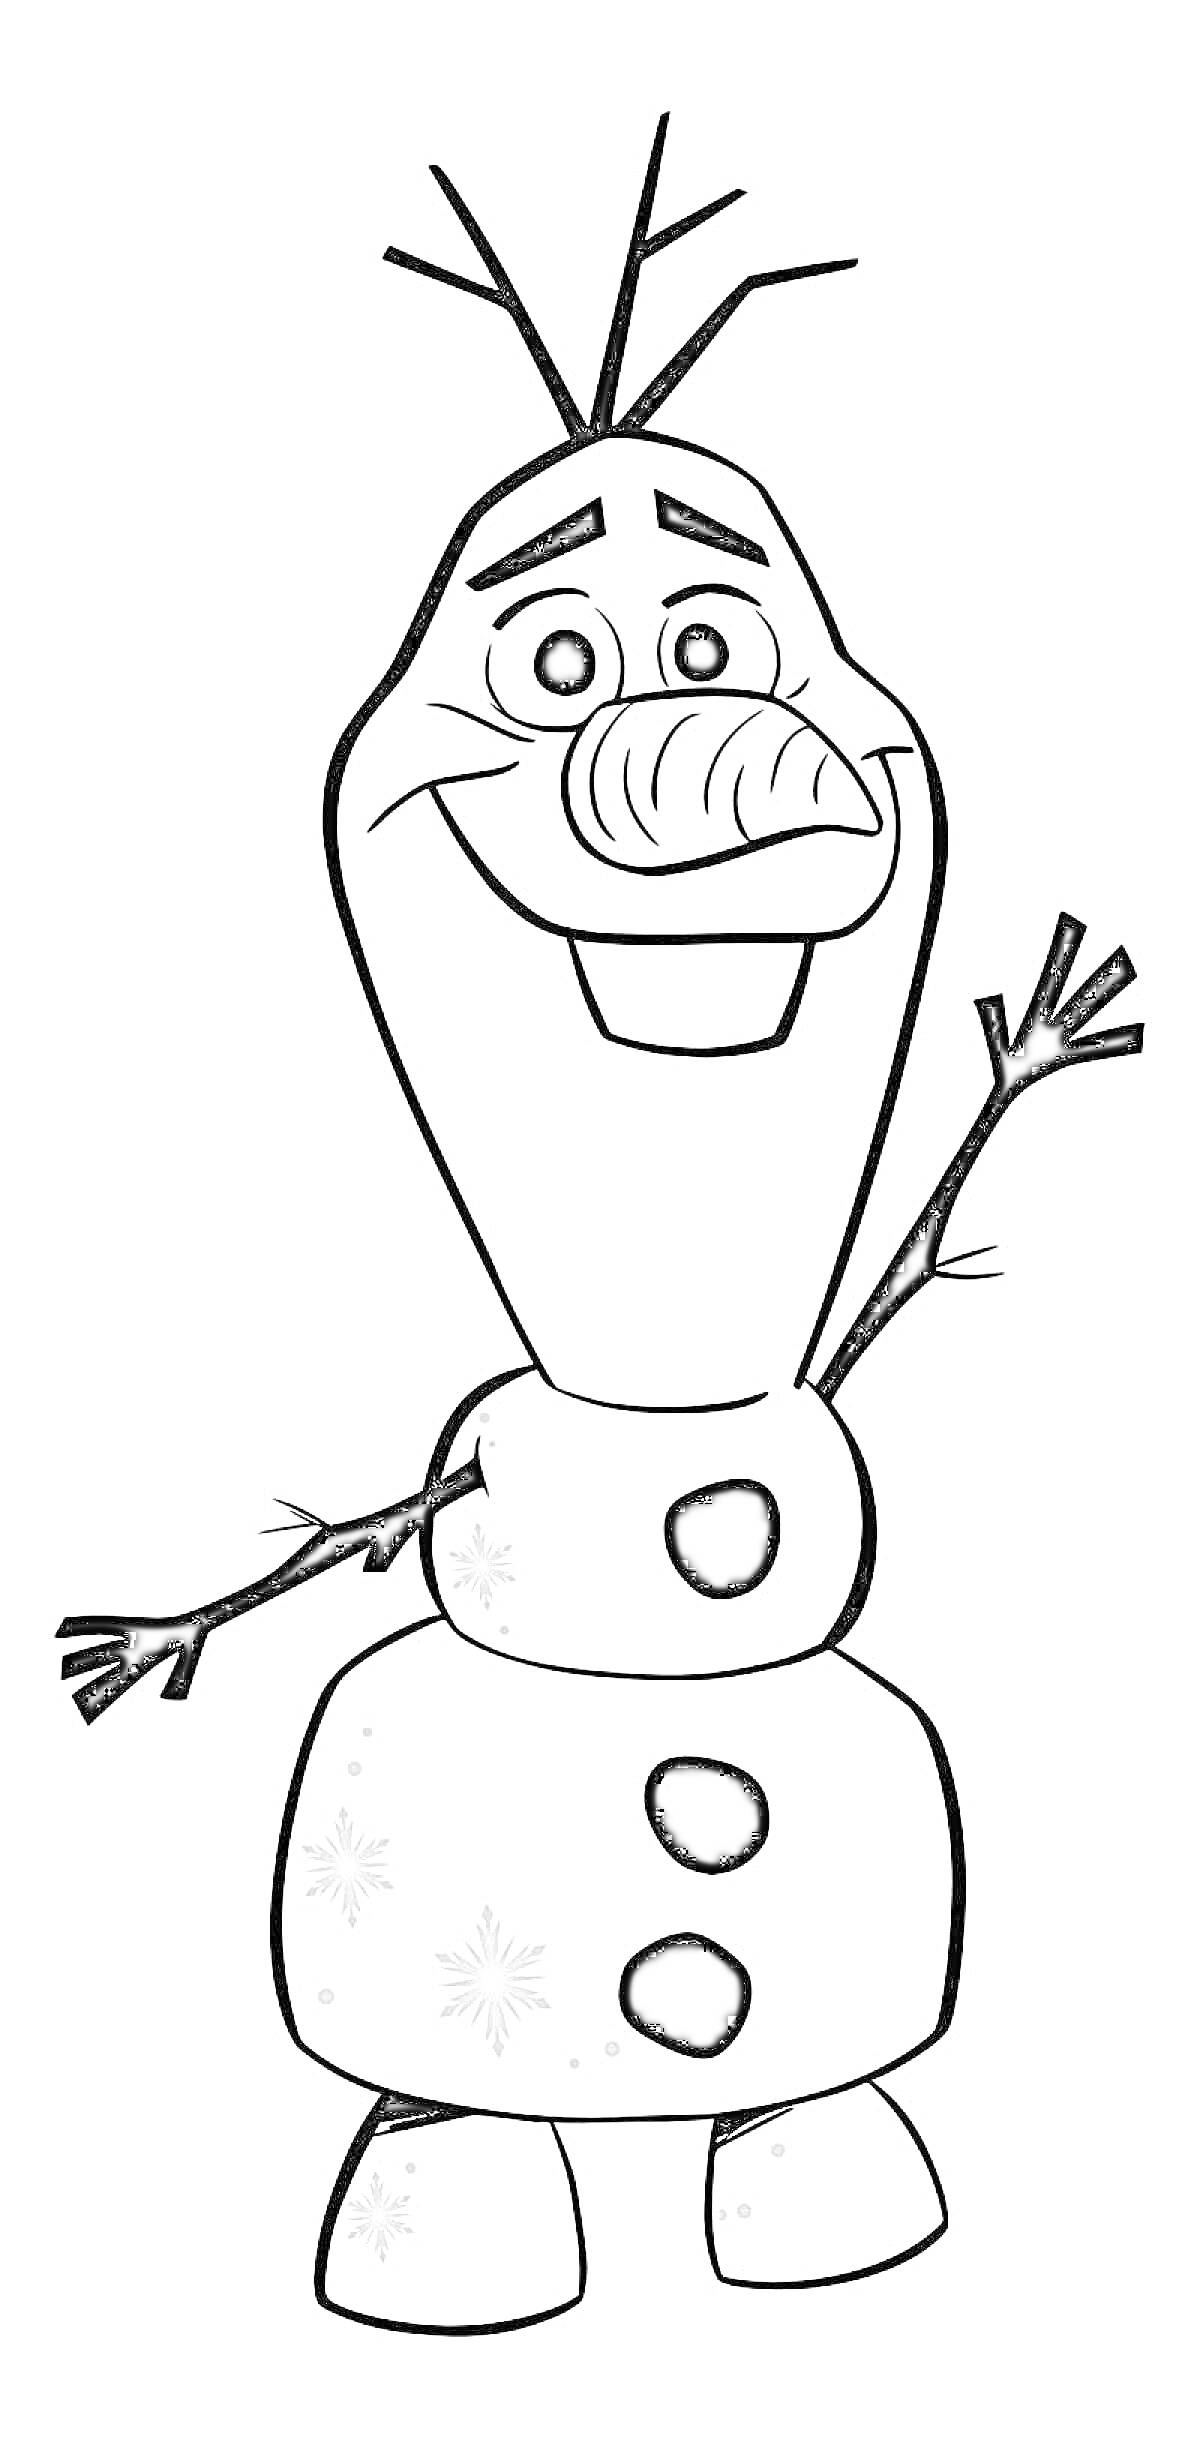 Раскраска Олаф с улыбкой и поднятой рукой, три черных пуговицы, снежинки на теле